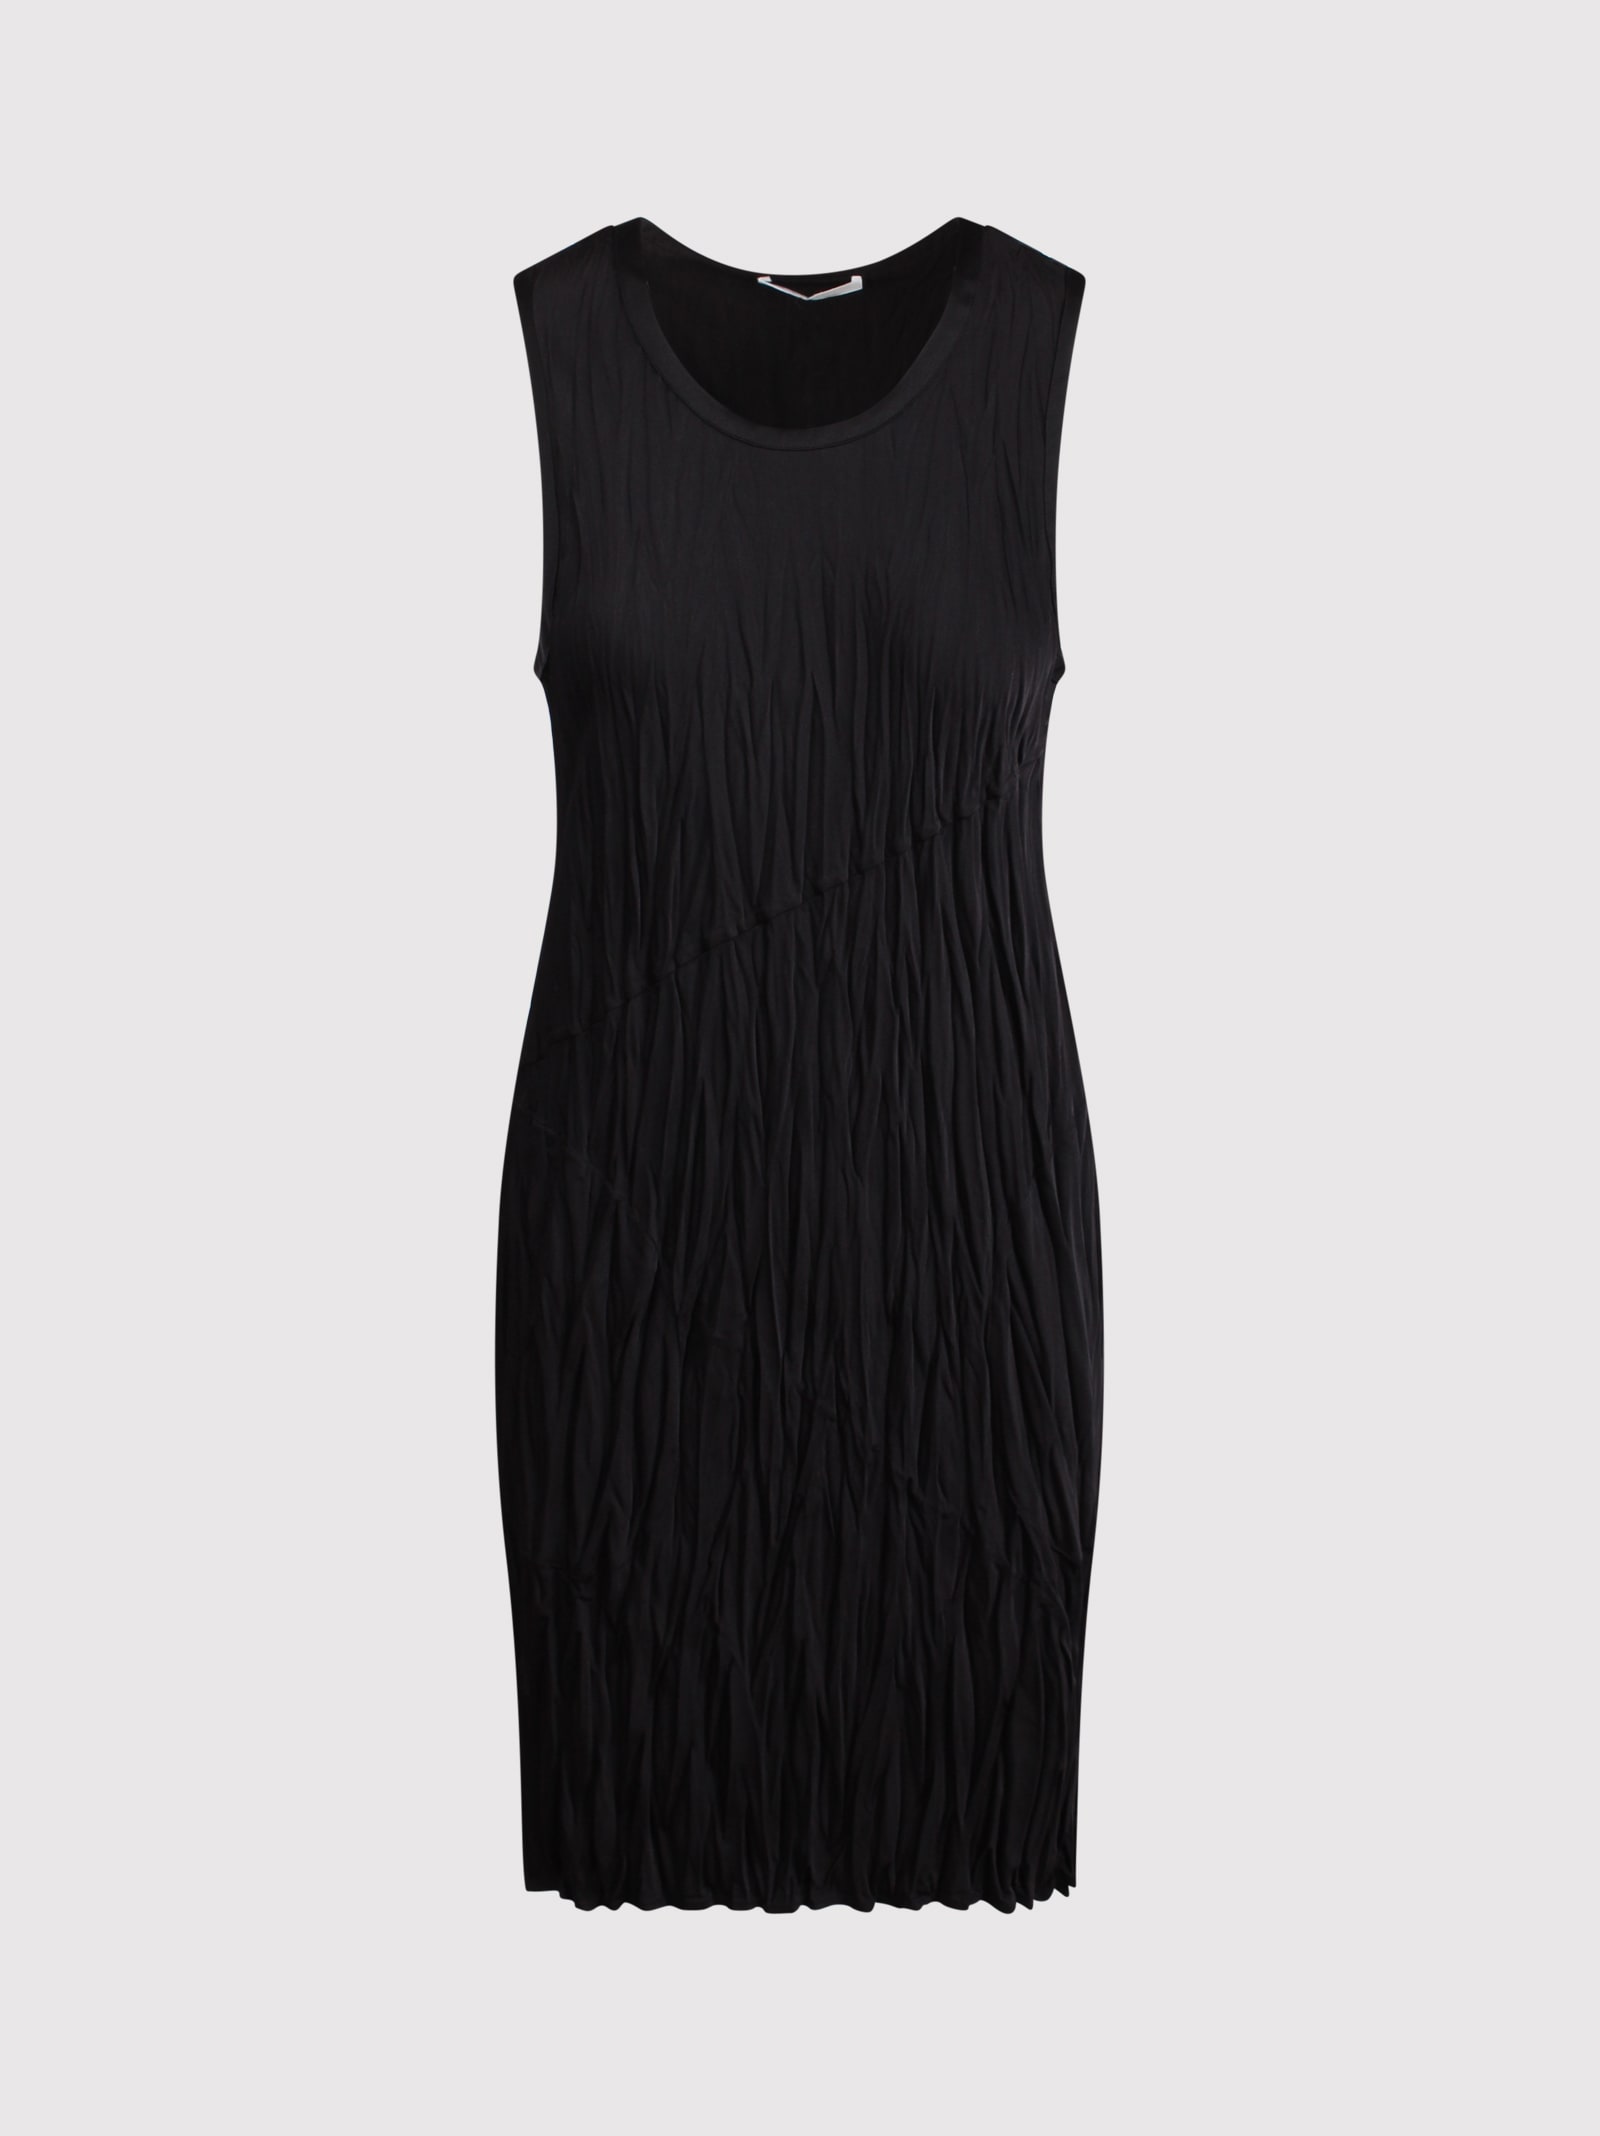 Helmut Lang Wrinkled Effect Satin Dress In Black